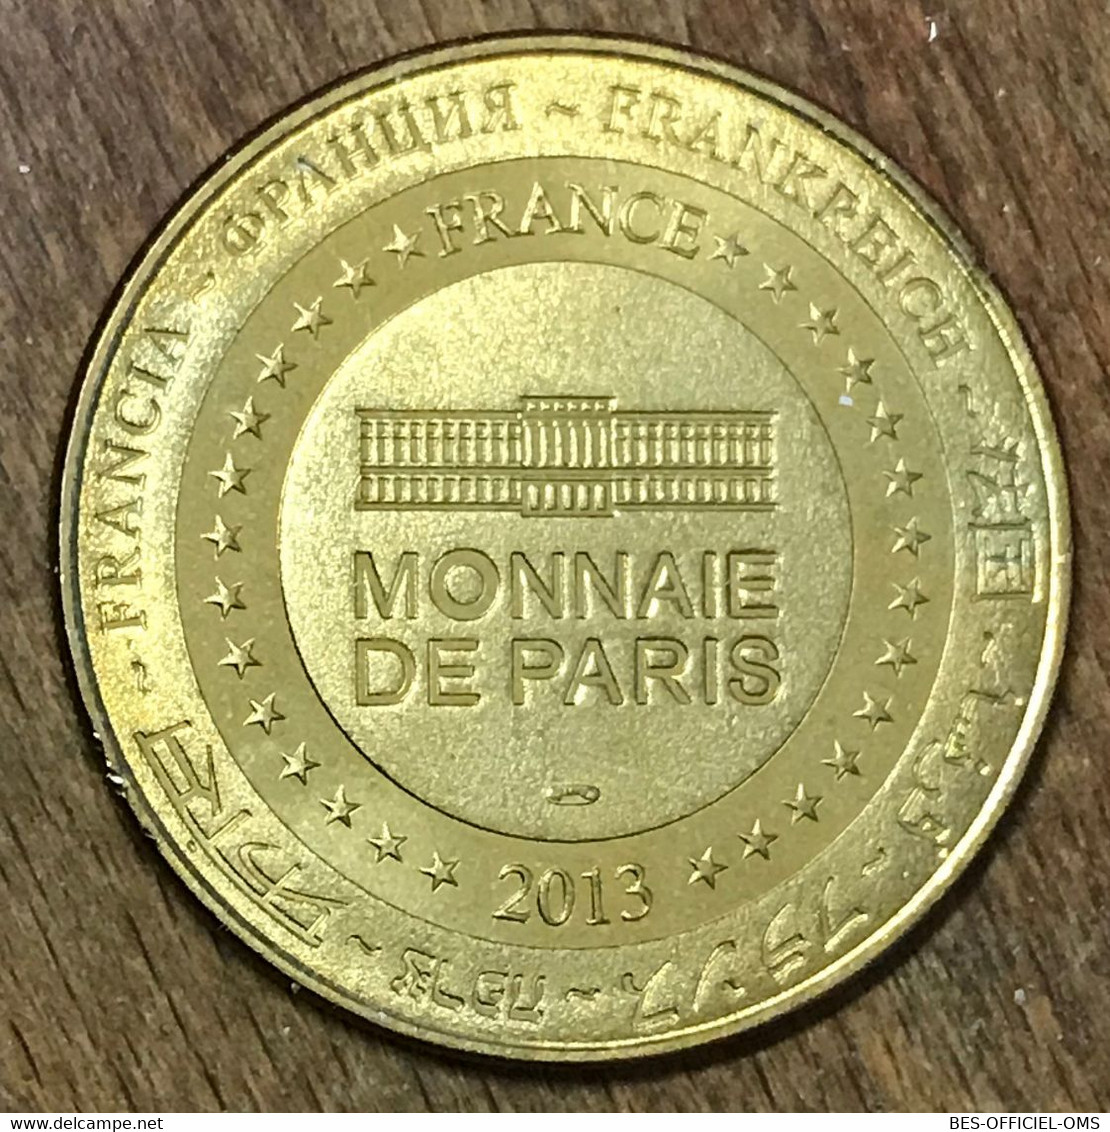 57 NEUFCHEF MINES DE FER DE LORRAINE WAGONNET MEDAILLE MONNAIE DE PARIS 2013 JETON TOURISTIQUE MEDALS COINS TOKENS - 2013